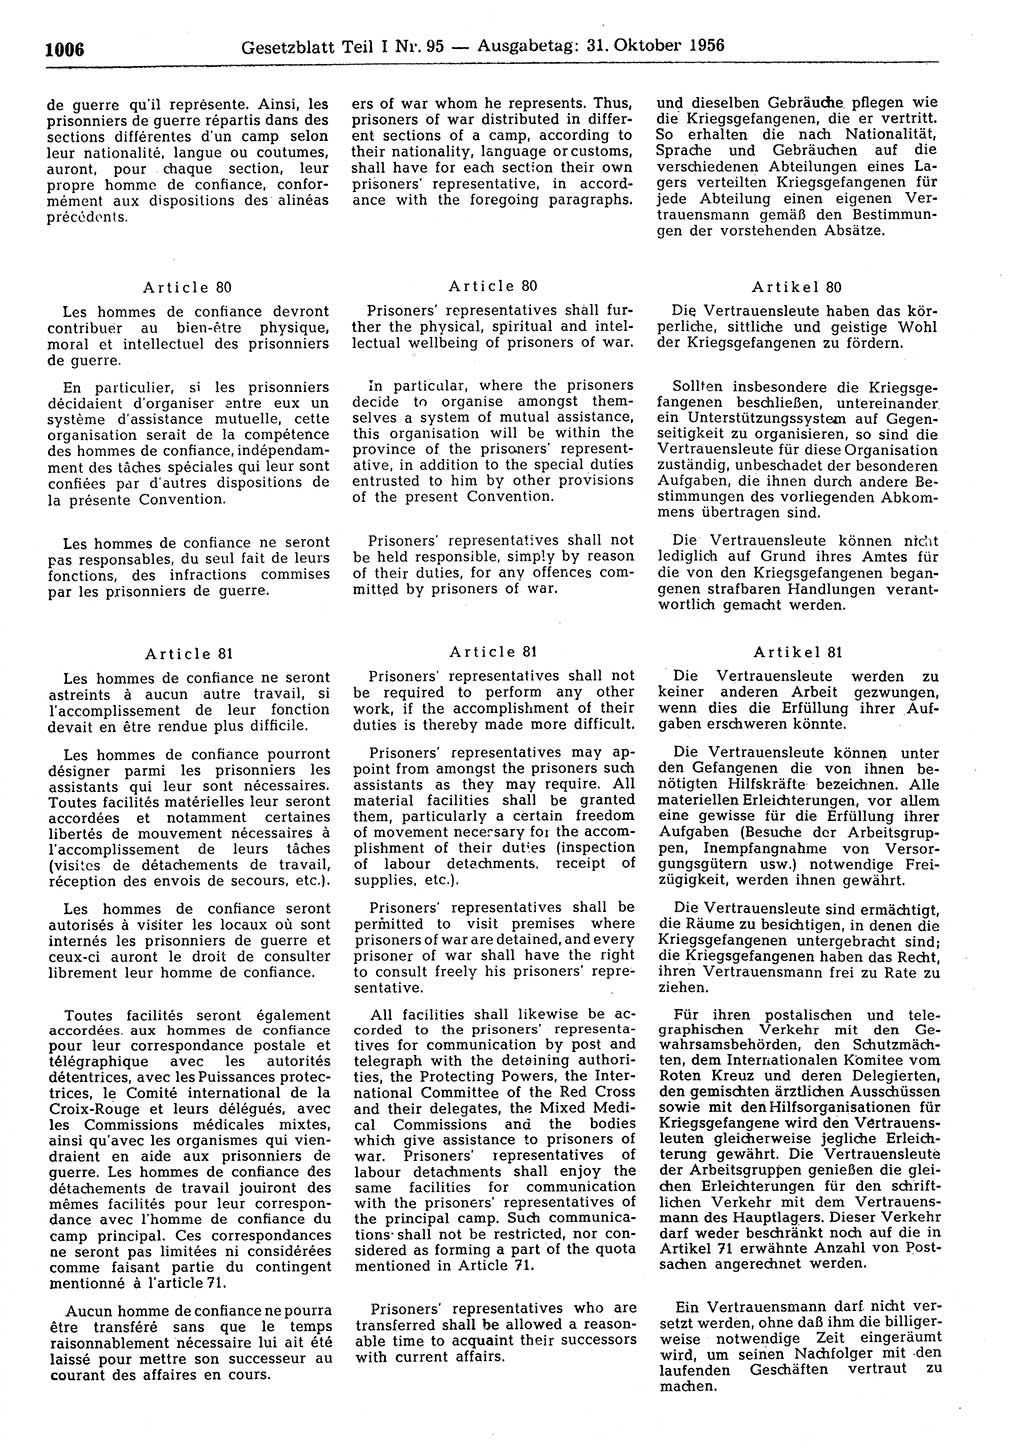 Gesetzblatt (GBl.) der Deutschen Demokratischen Republik (DDR) Teil Ⅰ 1956, Seite 1006 (GBl. DDR Ⅰ 1956, S. 1006)